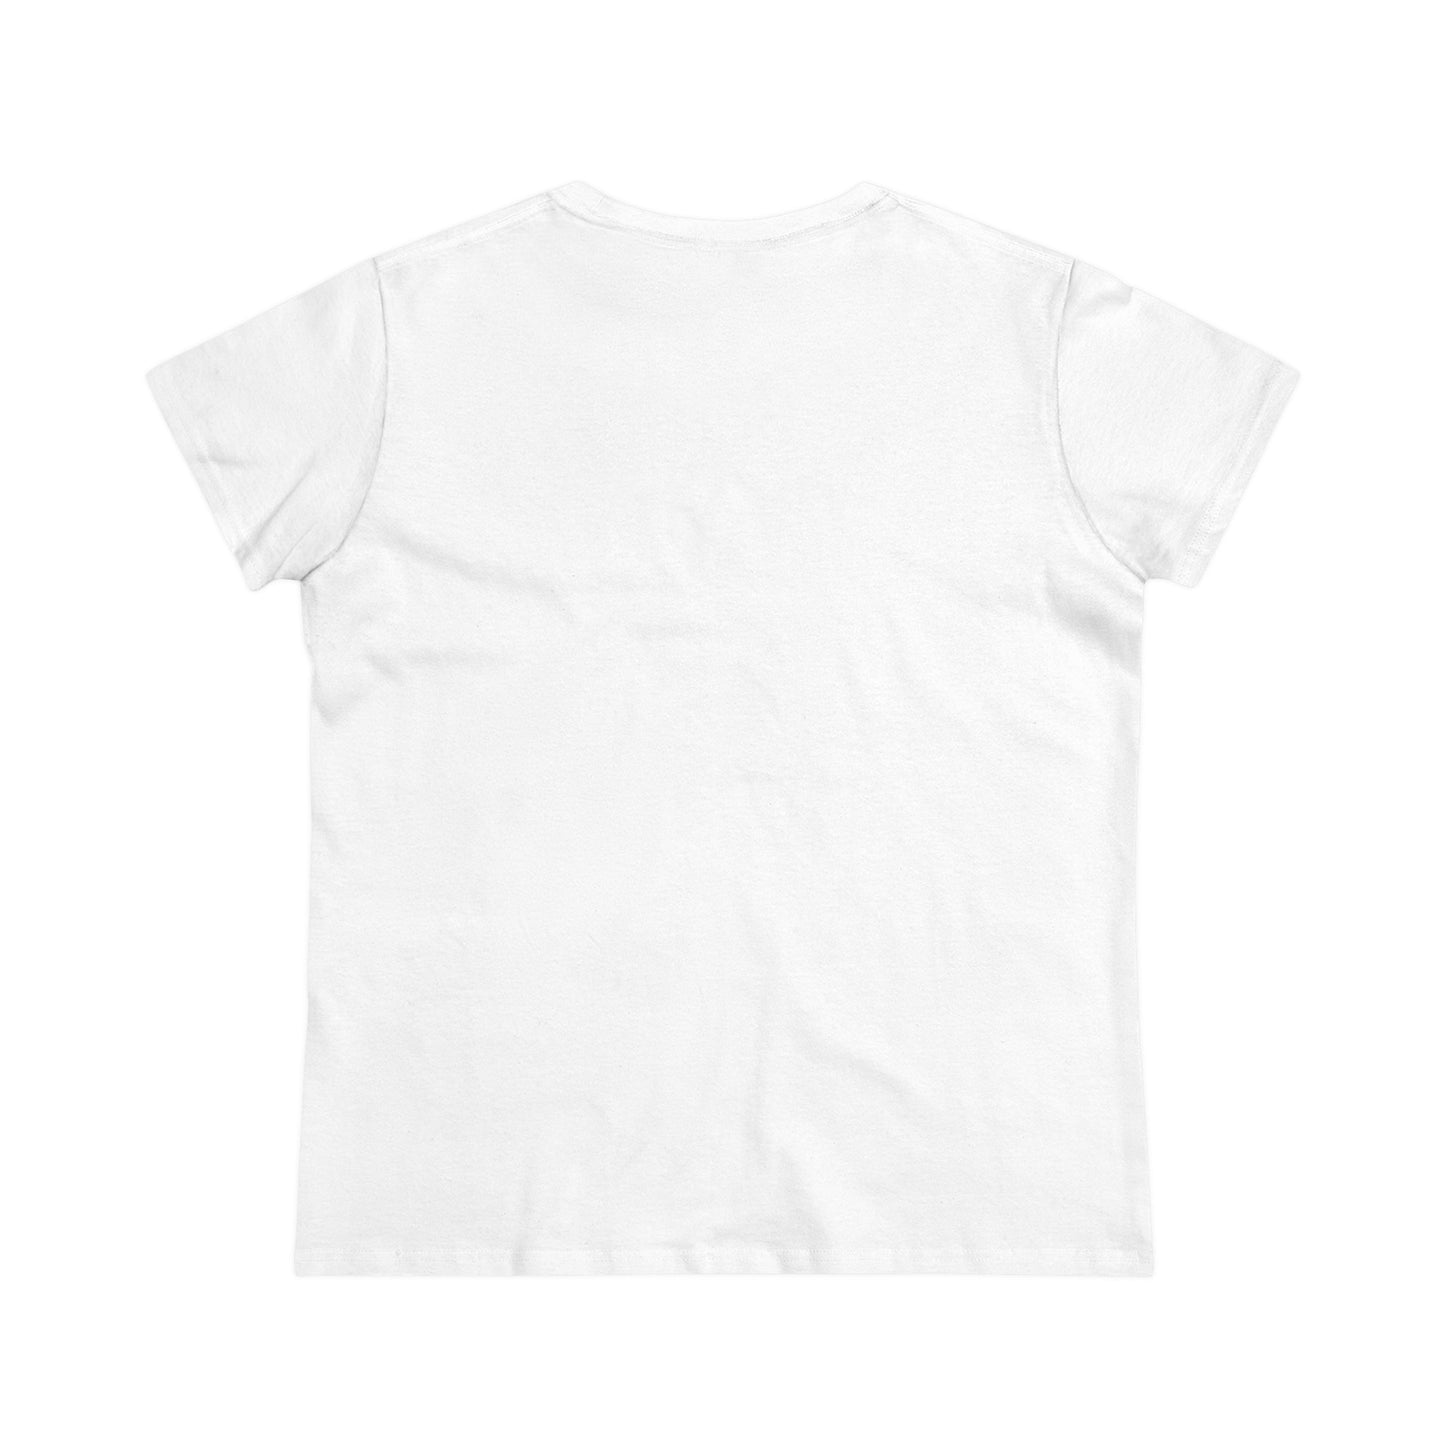 Boutique - Monochrome Building & Map - Ladies Midweight Cotton T-Shirt